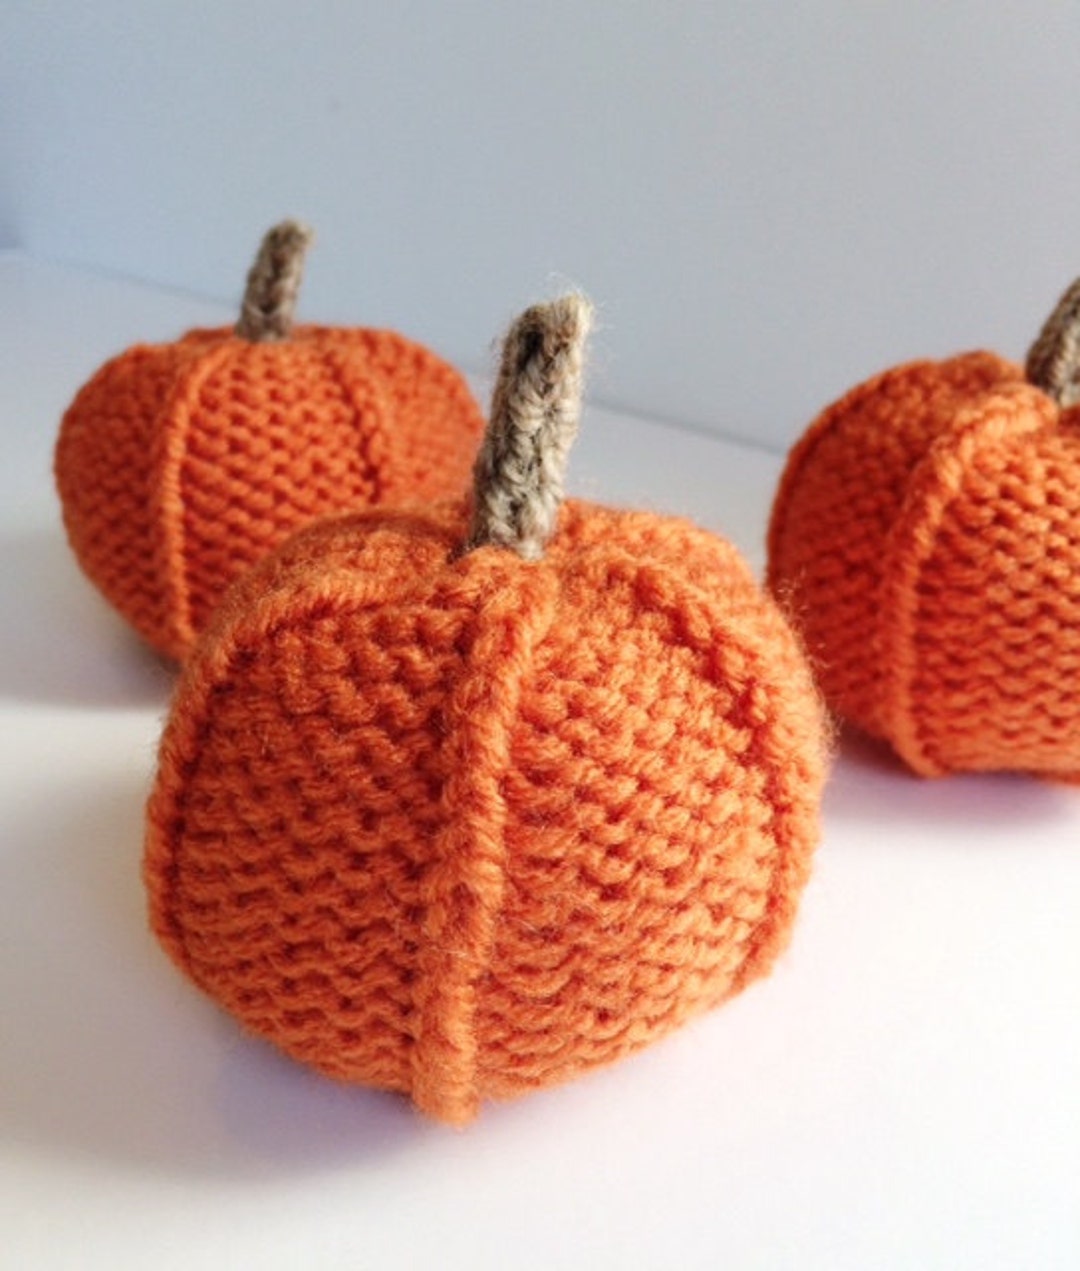 Hand-knit Orange Pumpkins, Fall Home Decor, Knitted Pumpkin Gift, Hand ...